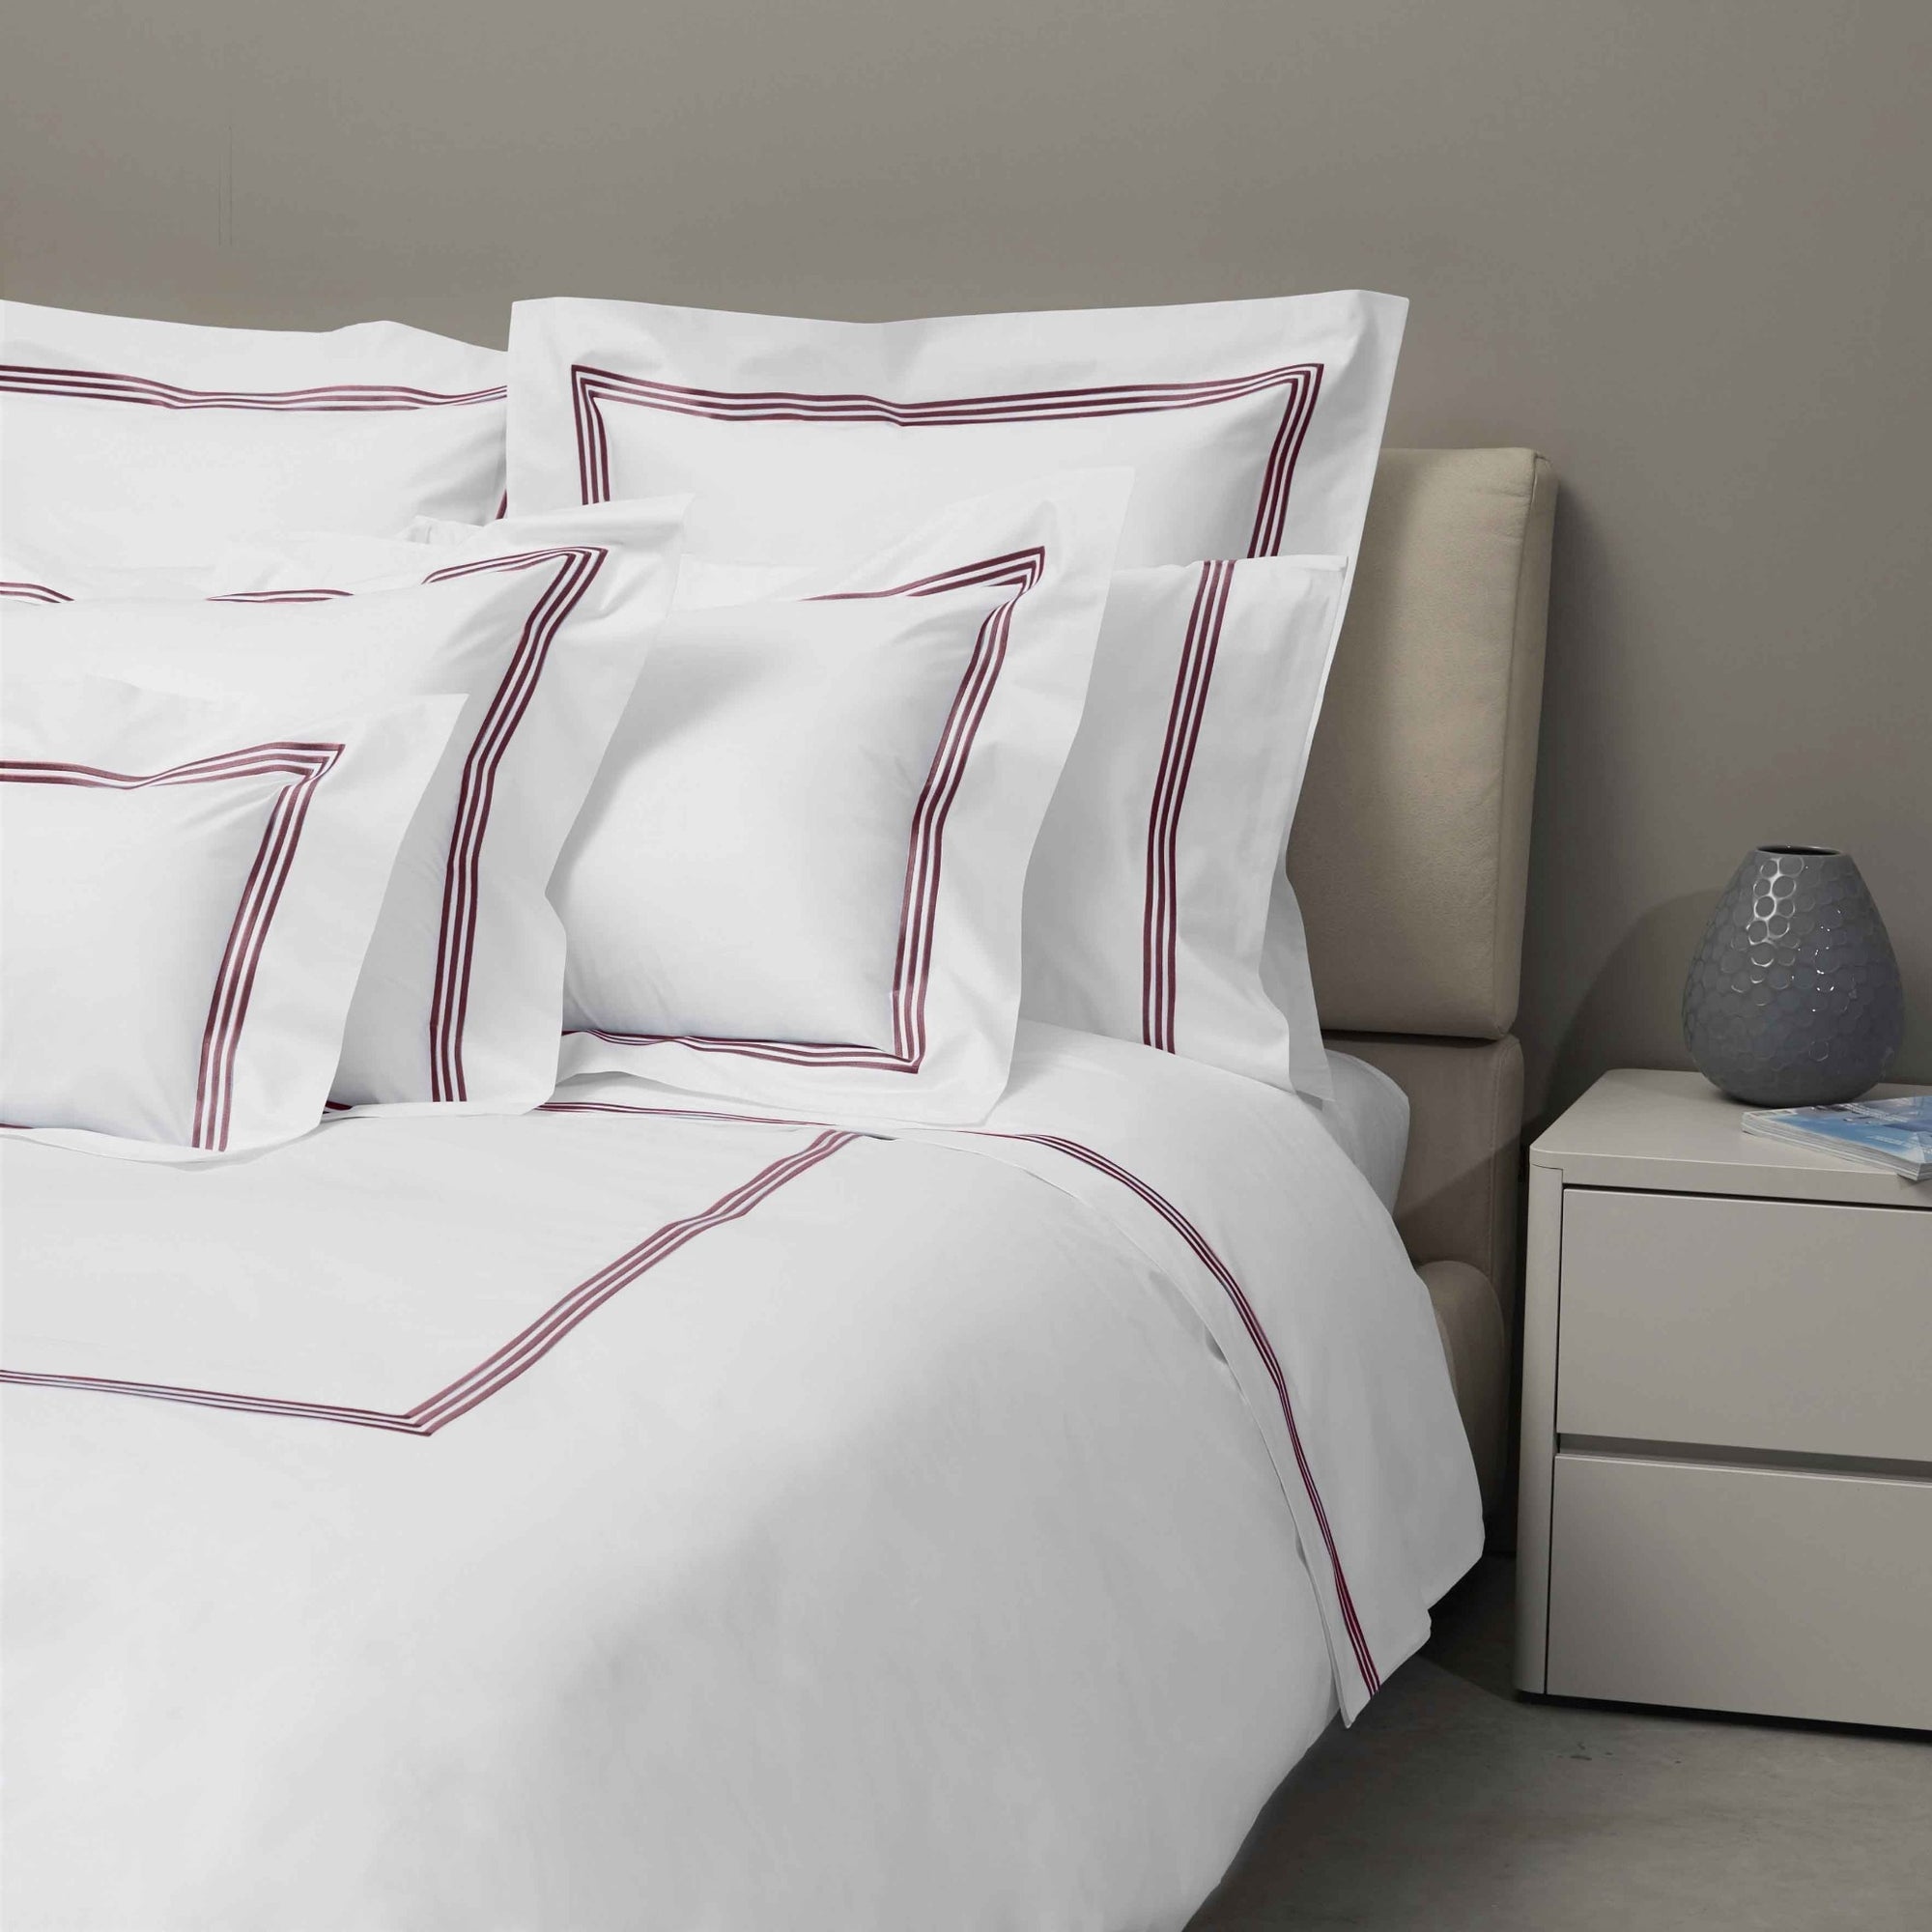 Bed Dressed in Signoria Platinum Percale Bedding in White/Plum Color